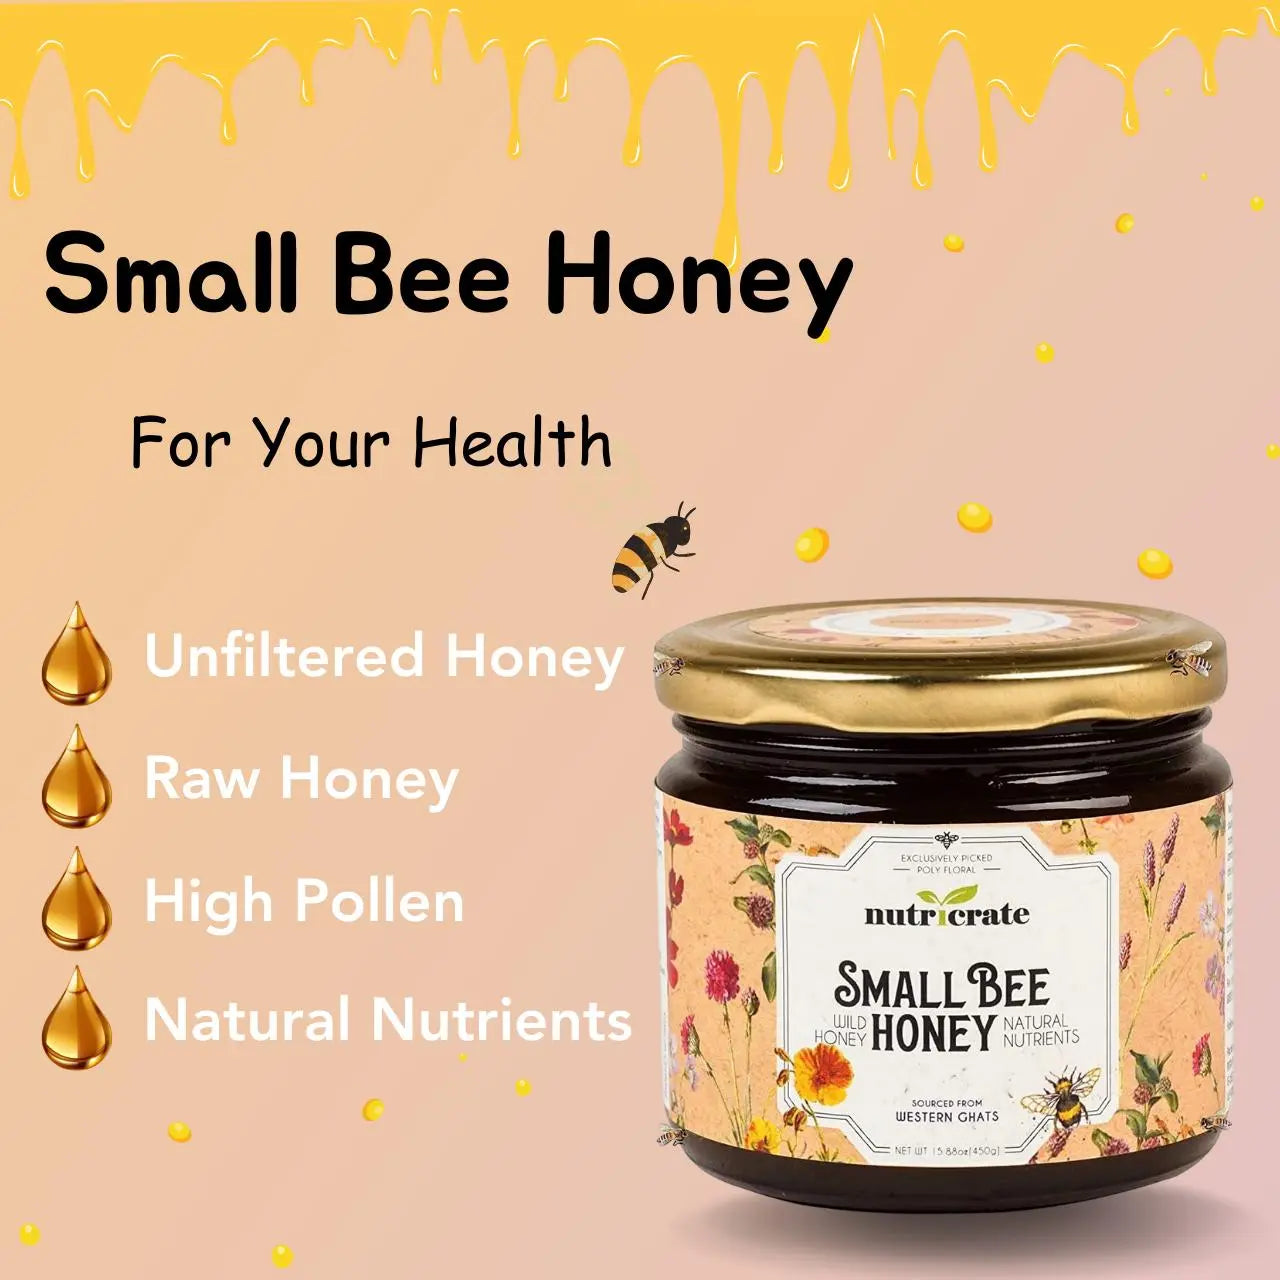 Nutricrate Smallbee Honey 450gm | Pack of 2 